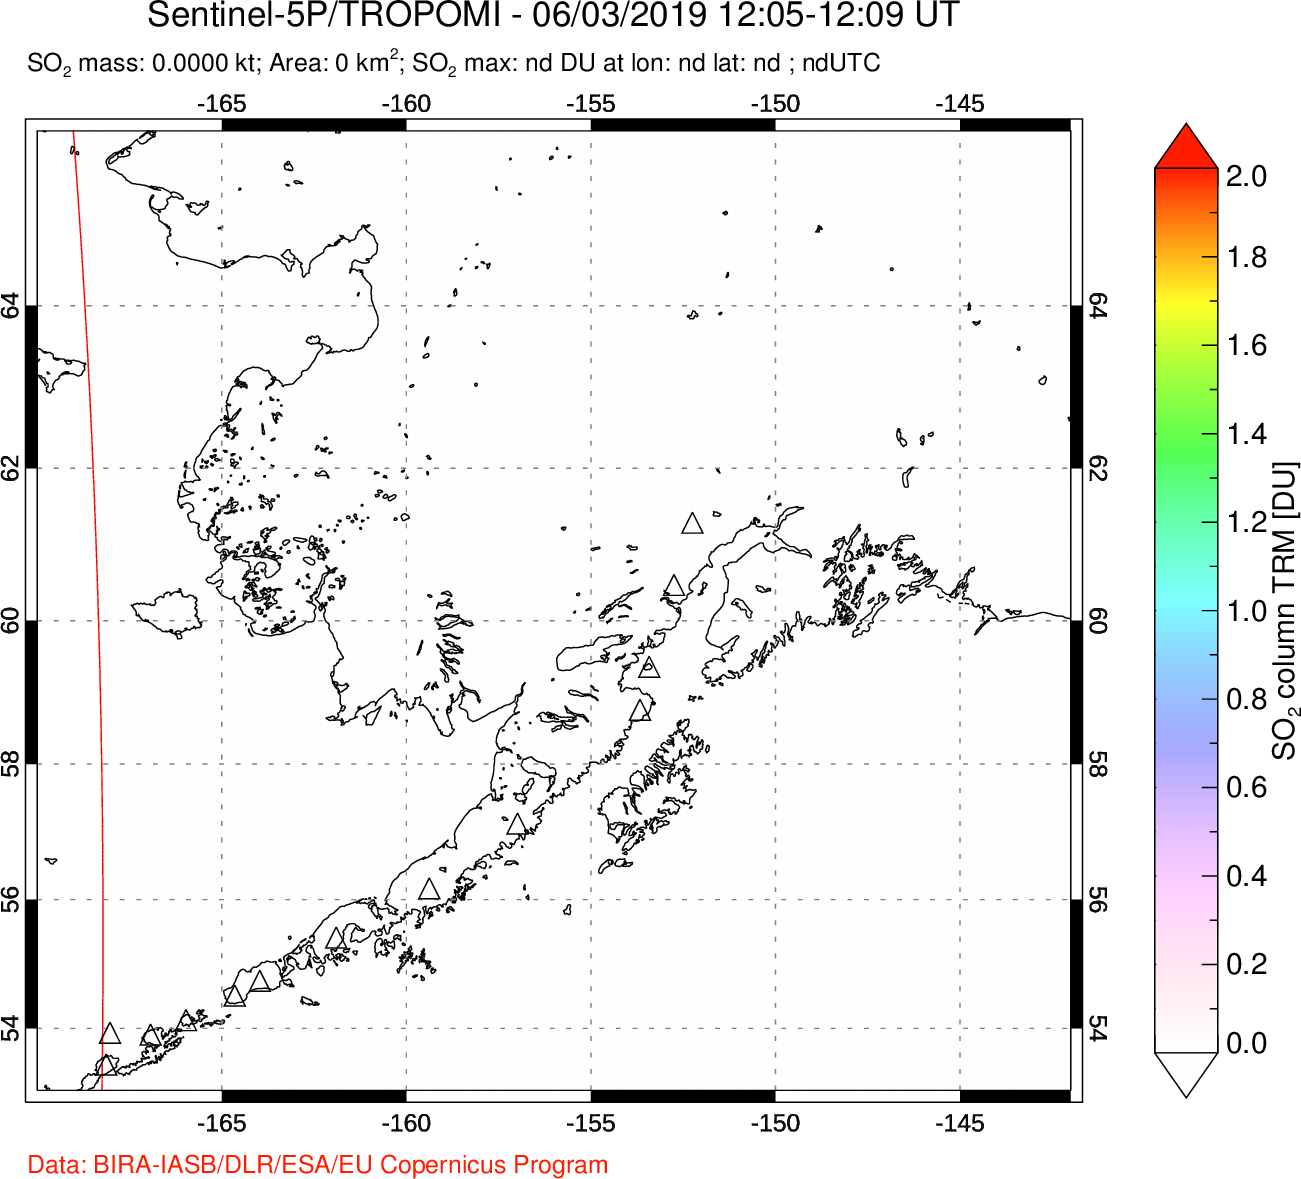 A sulfur dioxide image over Alaska, USA on Jun 03, 2019.